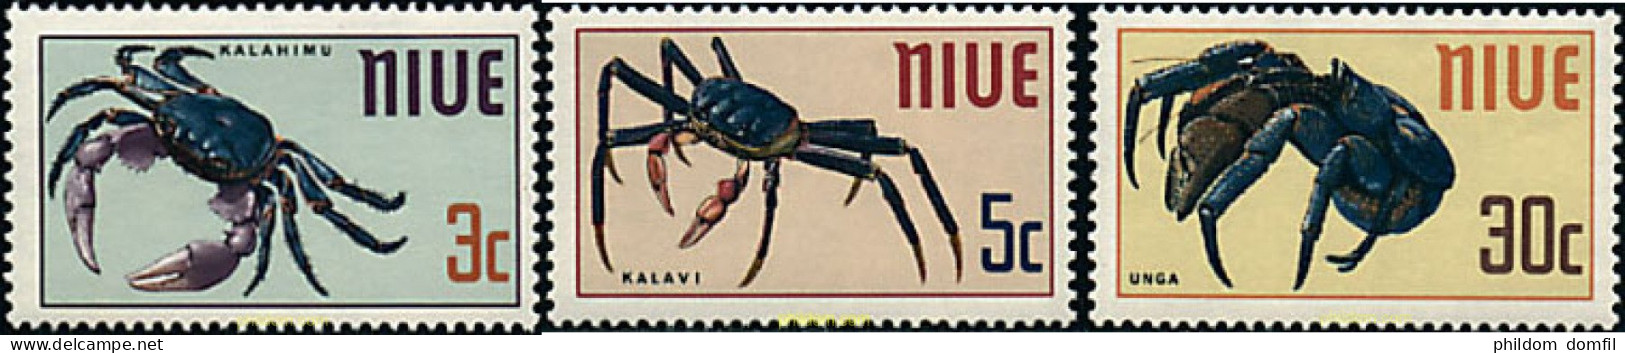 44799 MNH NIUE 1970 CRUSTACEOS - Niue